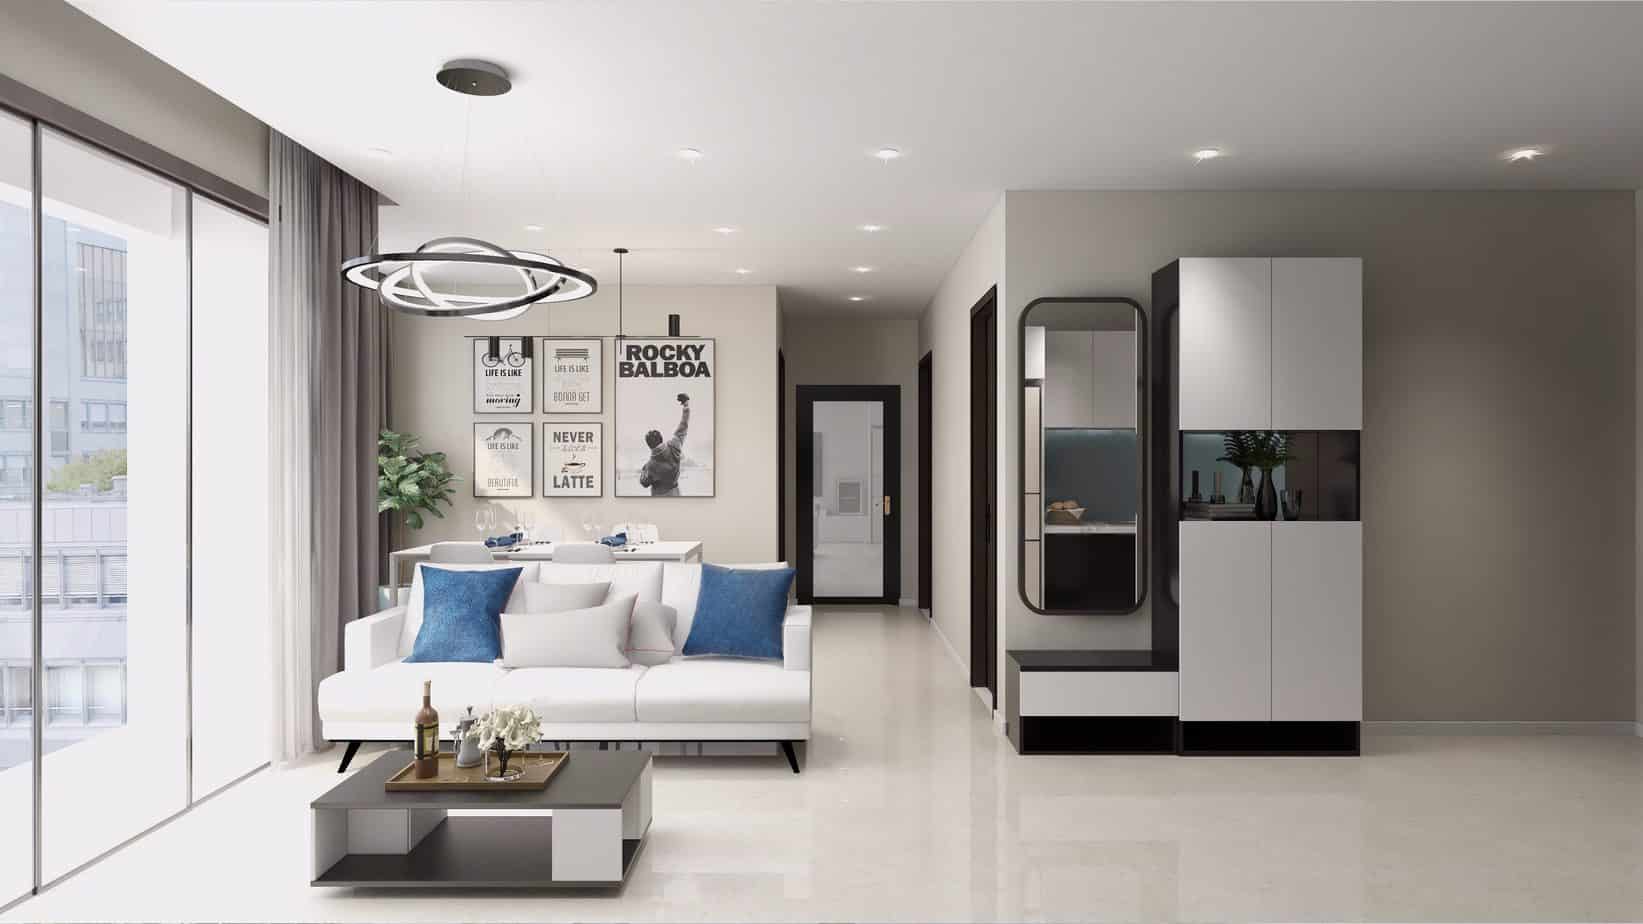 Mẫu thiết kế căn hộ 68m2 – Vinhomes Smart City – anh Thanh